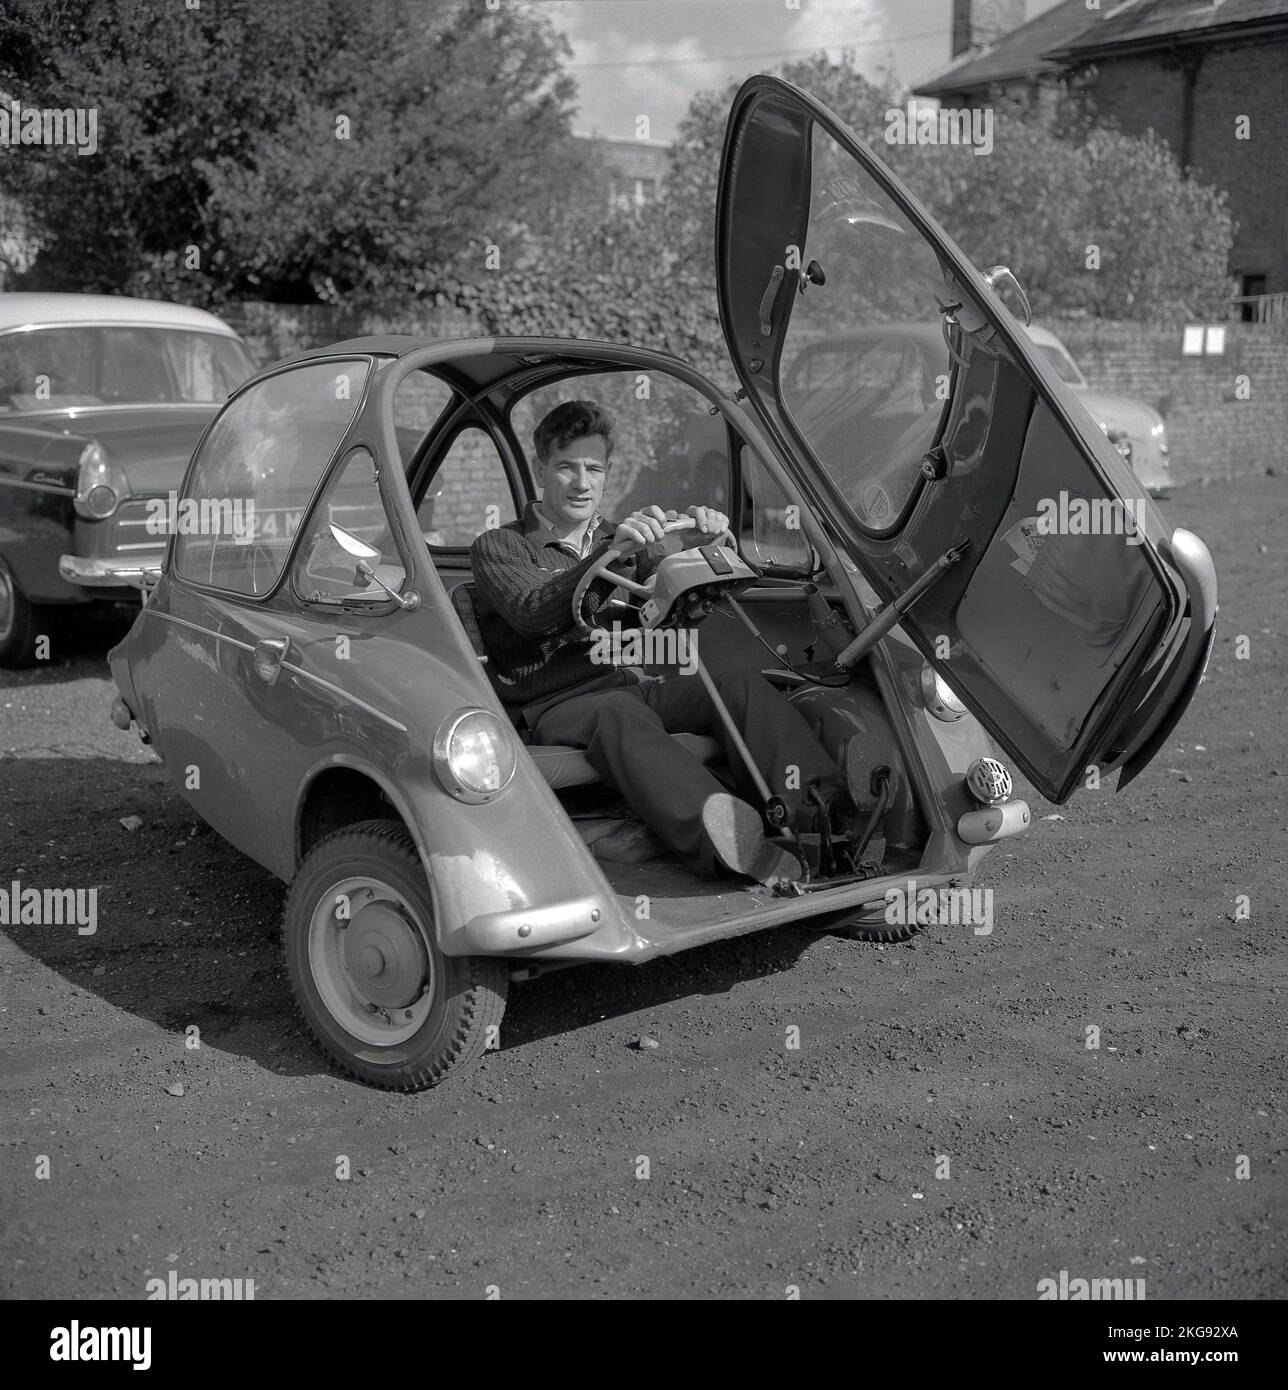 1960s, storico, fuori in un parcheggio di ghiaia, un uomo seduto all'interno di una piccola auto dell'epoca, una bolla auto, una BMW Isetta, che aveva una porta di apertura anteriore, Wycombe, Inghilterra, Regno Unito. Costruita per la prima volta da ISO Spa in Italia nel 1953, questa piccola auto è stata costruita su licenza in diversi paesi, tra cui BMW di Germania fino al 1962 e nota come la 'Bubble Car'. Foto Stock